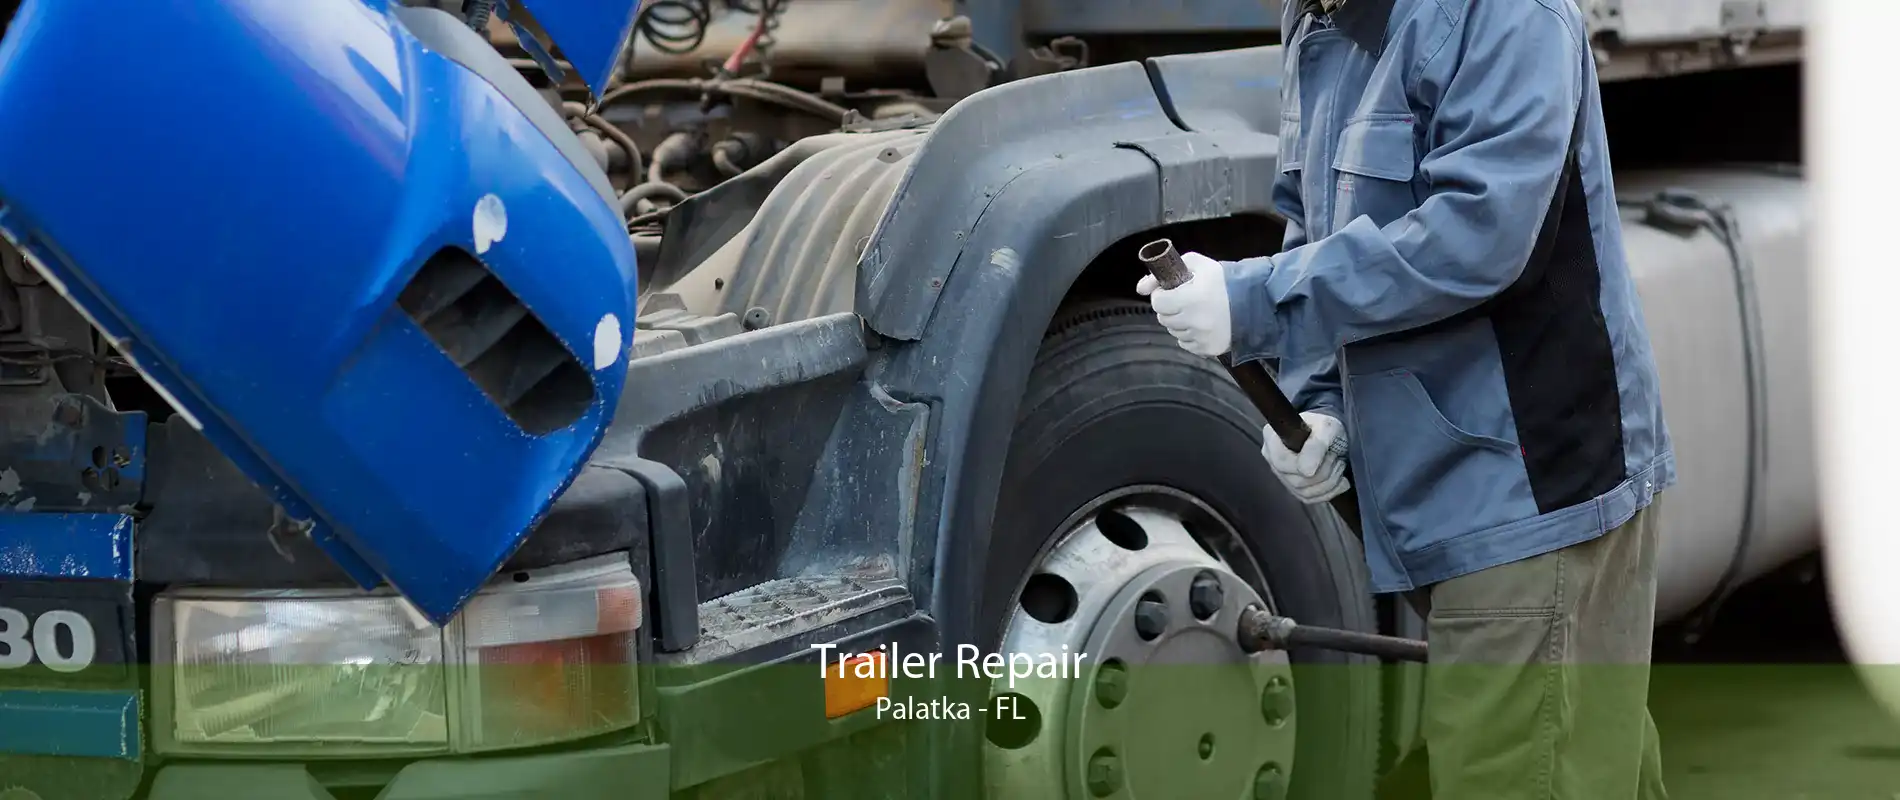 Trailer Repair Palatka - FL